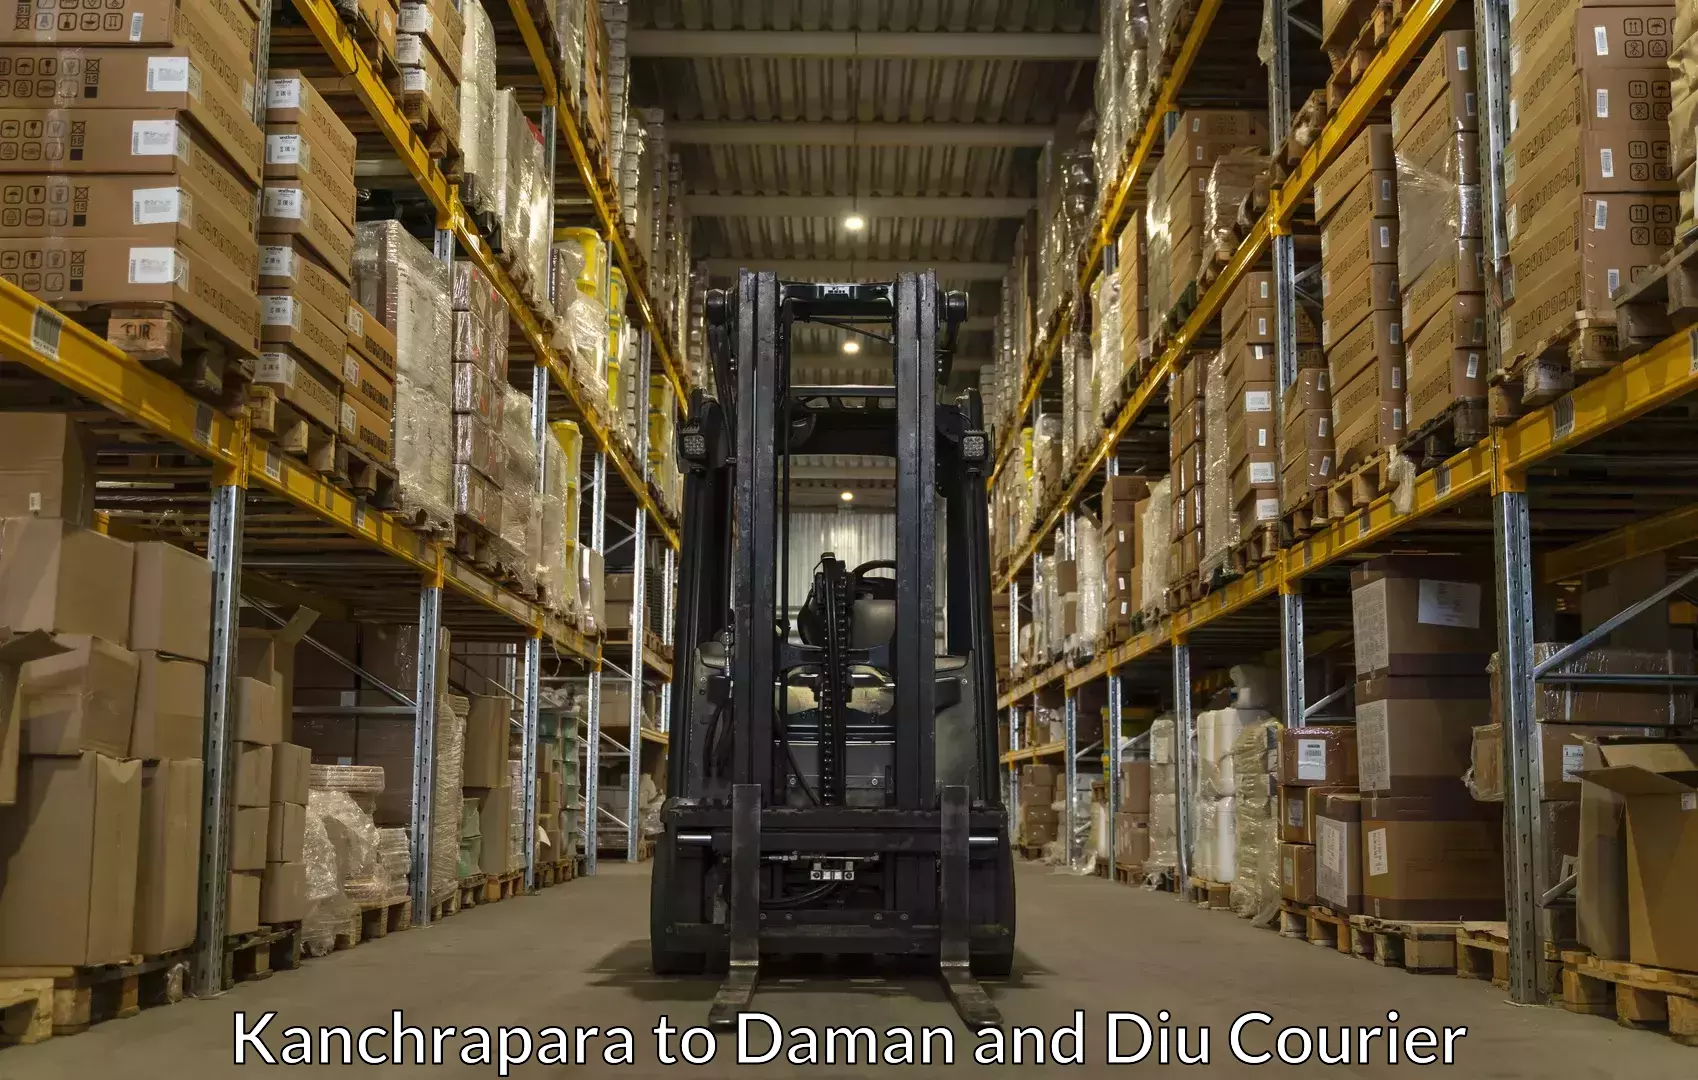 Baggage shipping service Kanchrapara to Daman